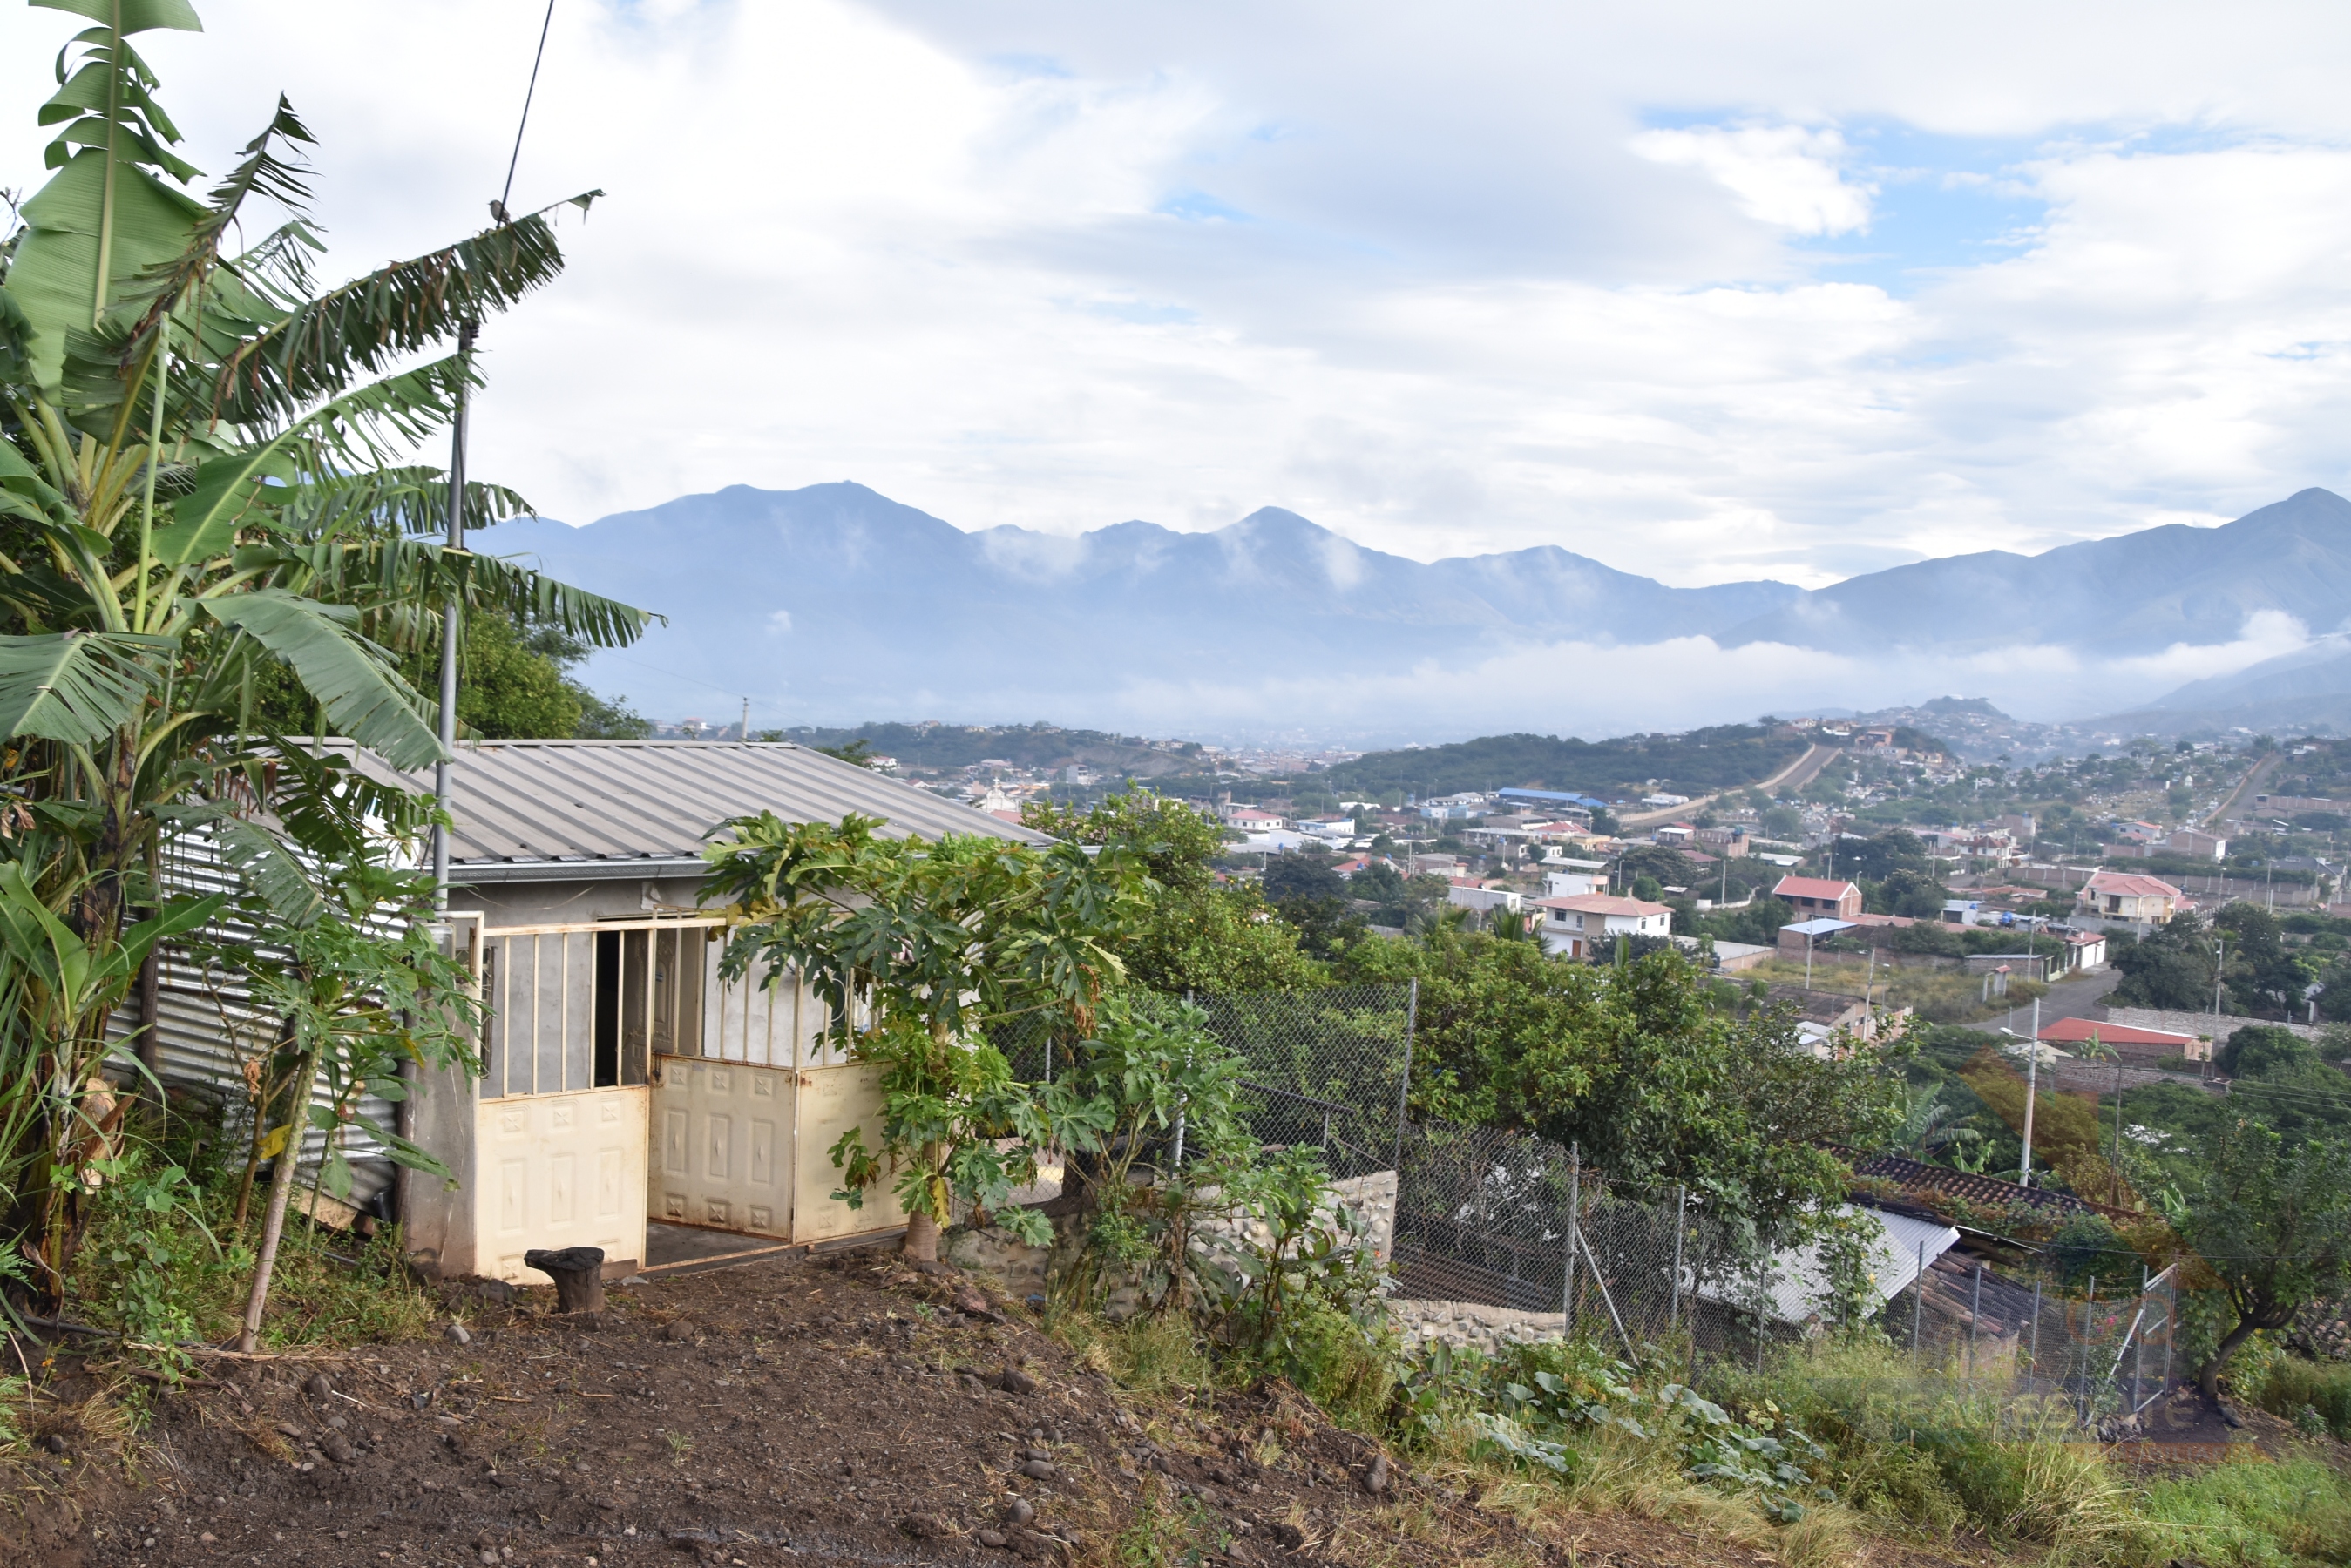 Venta de casa económica con terreno y árboles frutales en el valle de Catamayo, Provincia de Loja.